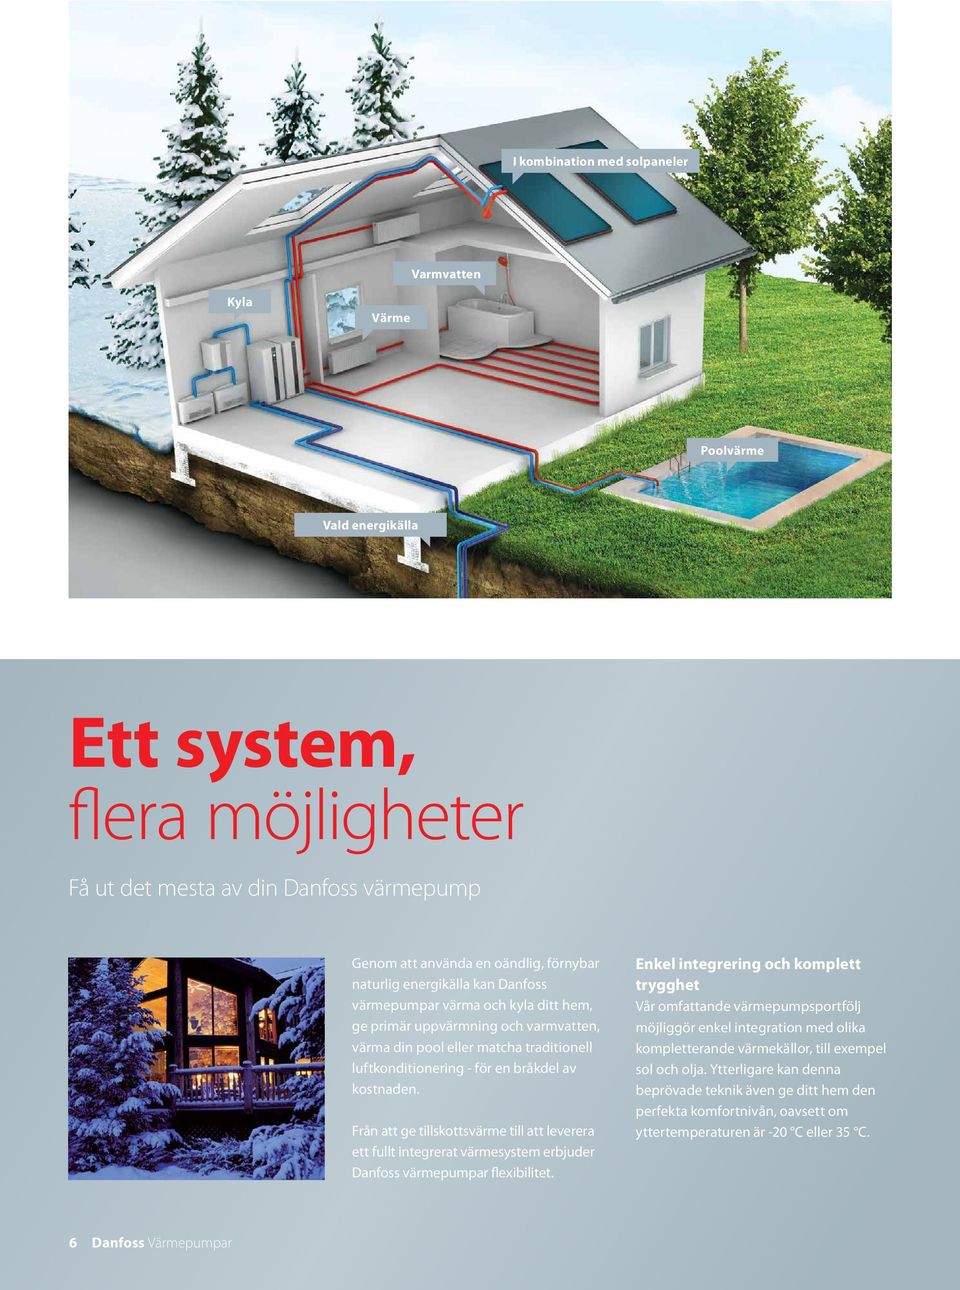 Från att ge tillskottsvärme till att leverera ett fullt integrerat värmesystem erbjuder Danfoss värmepumpar flexibilitet.